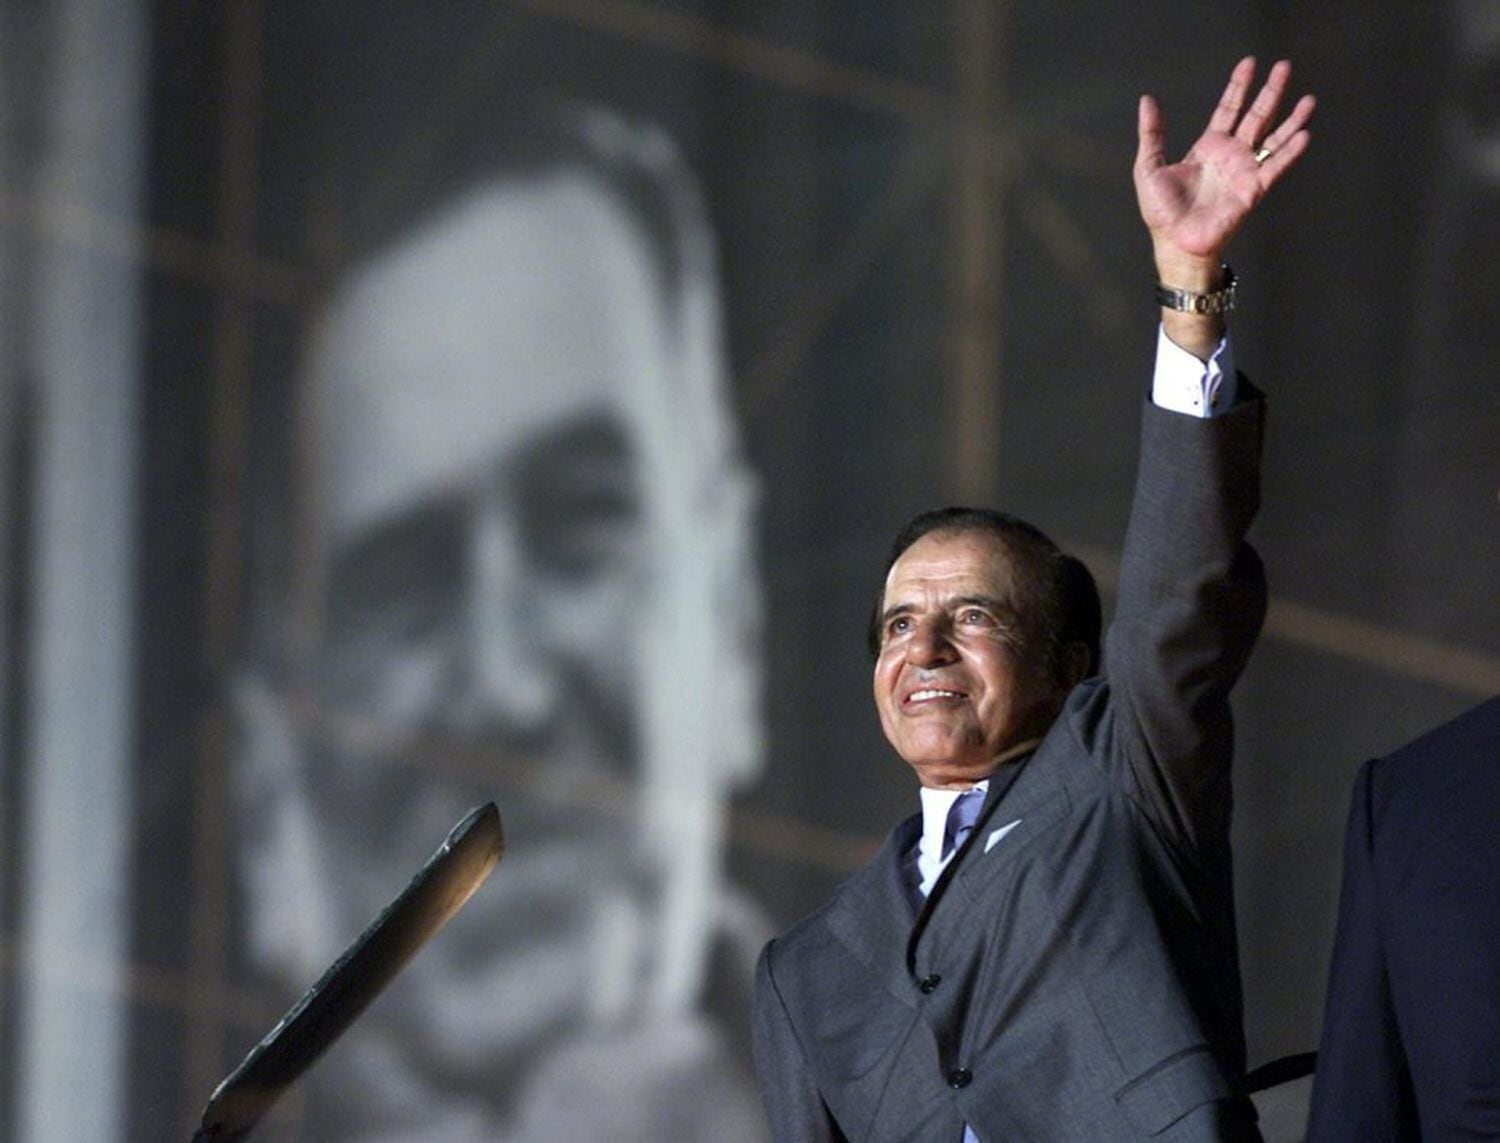 Carlos Menem saluda a sus simpatizantes, con un retrato del extinto presidente argentino Juan Domingo Perón como telón de fondo, en el estadio de River Plate, en abril de 2003.